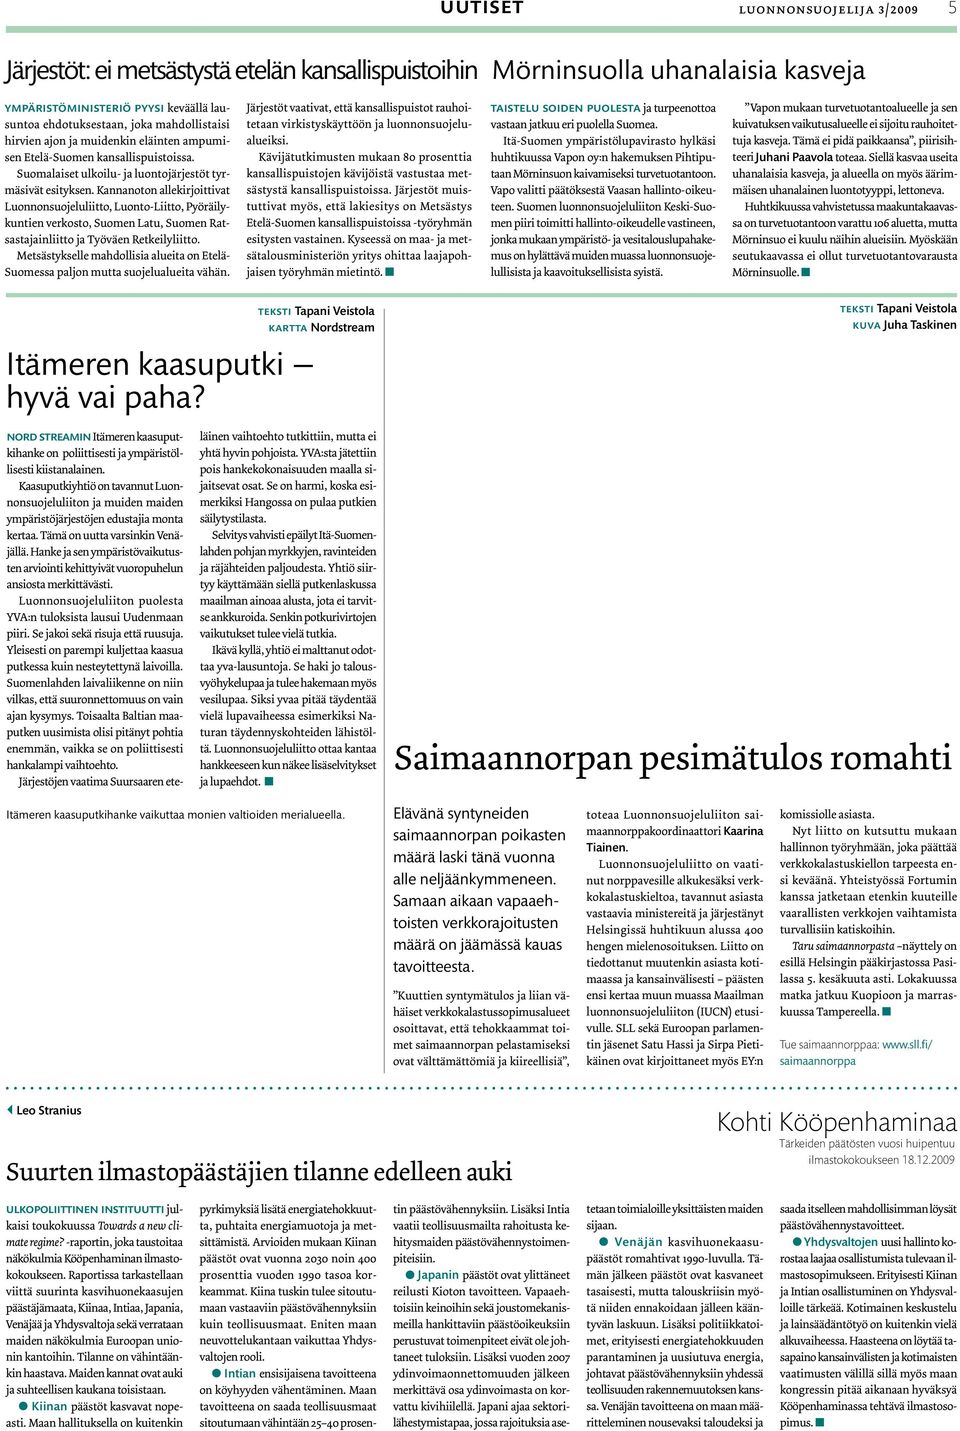 Kannanoton allekirjoittivat Luonnonsuojeluliitto, Luonto-Liitto, Pyöräilykuntien verkosto, Suomen Latu, Suomen Ratsastajainliitto ja Työväen Retkeilyliitto.